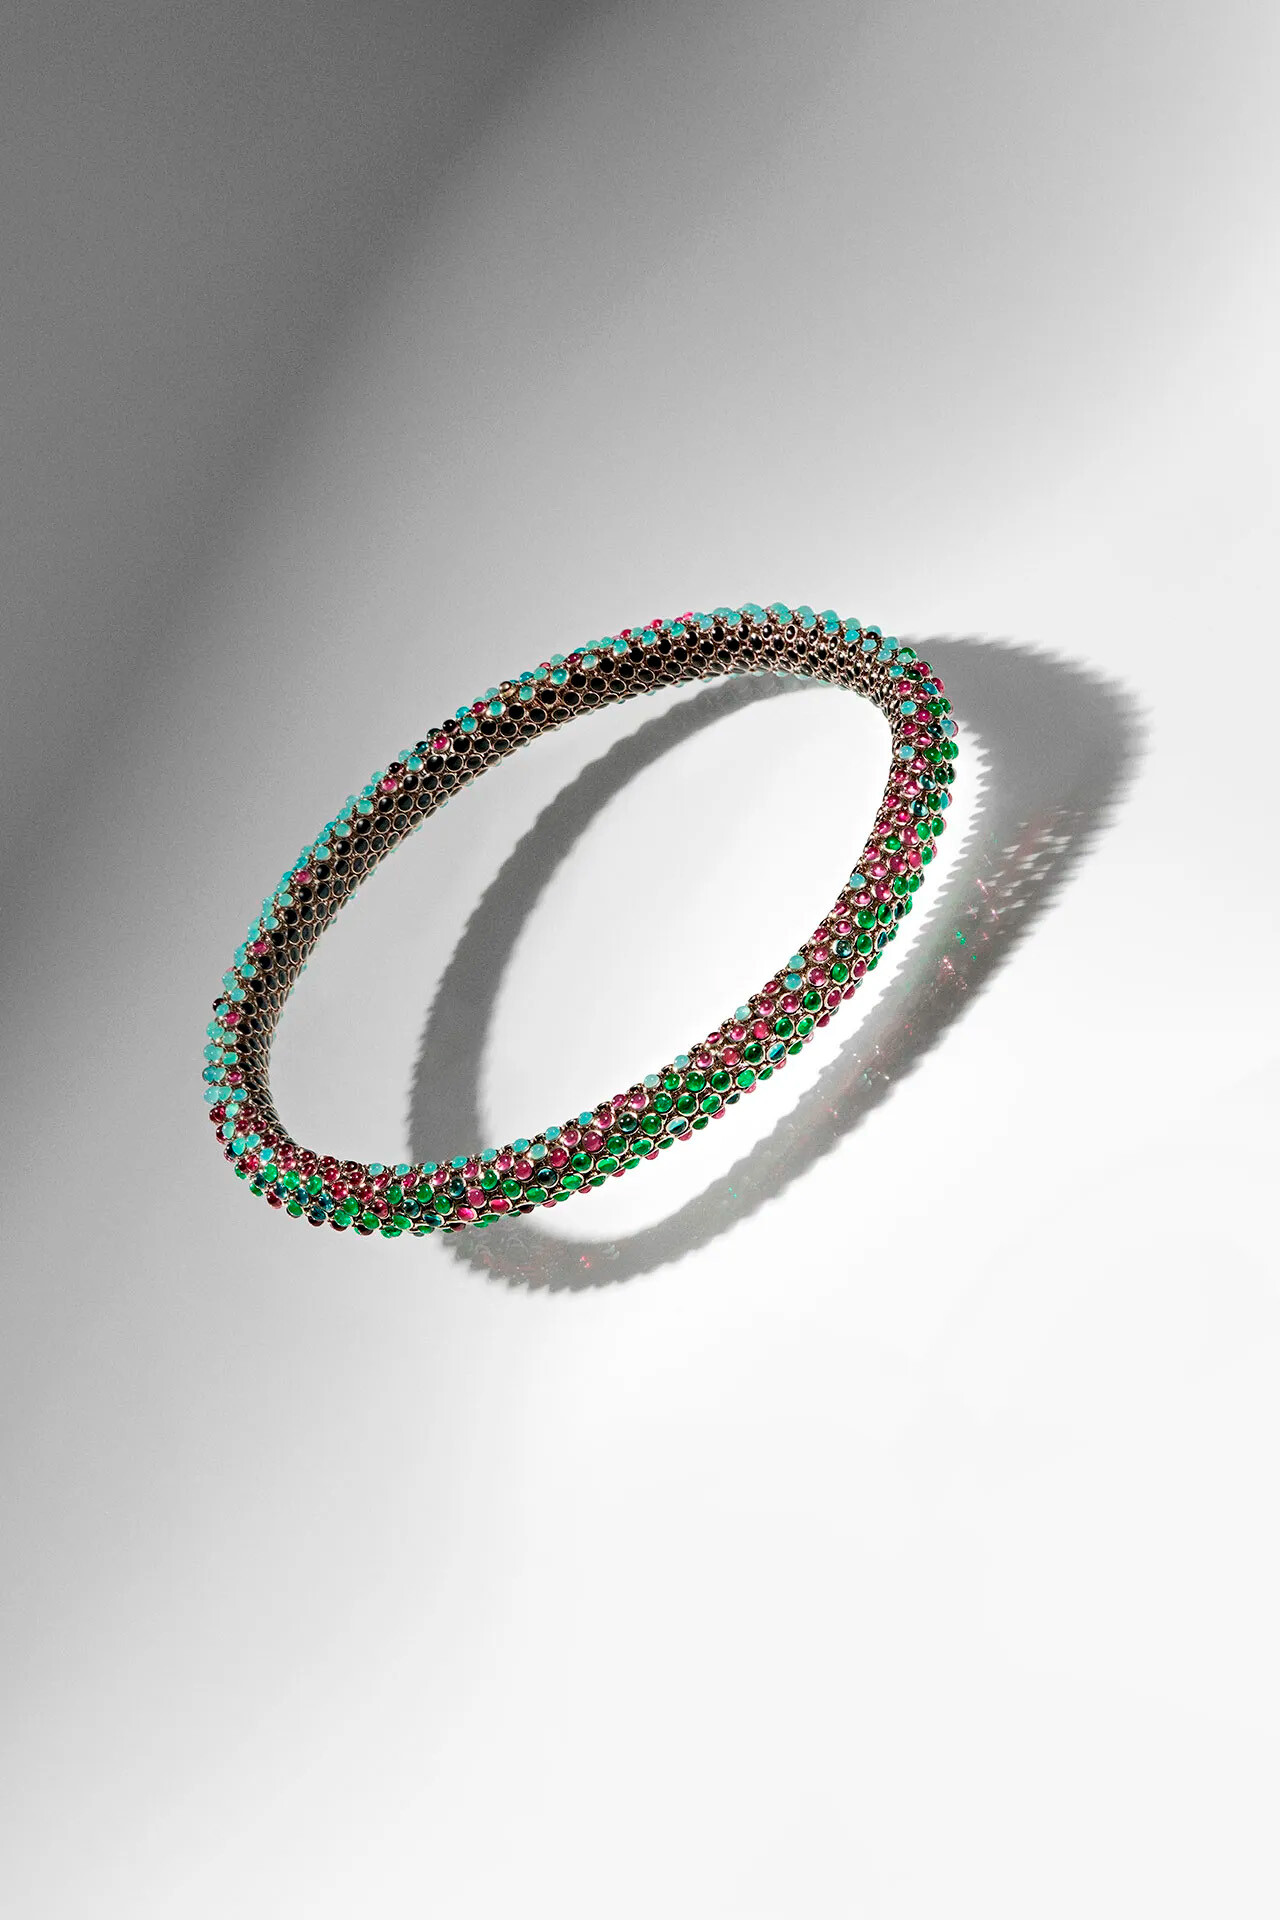 Тимоти Шаламе работал с Cartier над созданием ожерелья в стиле Вилли Вонки